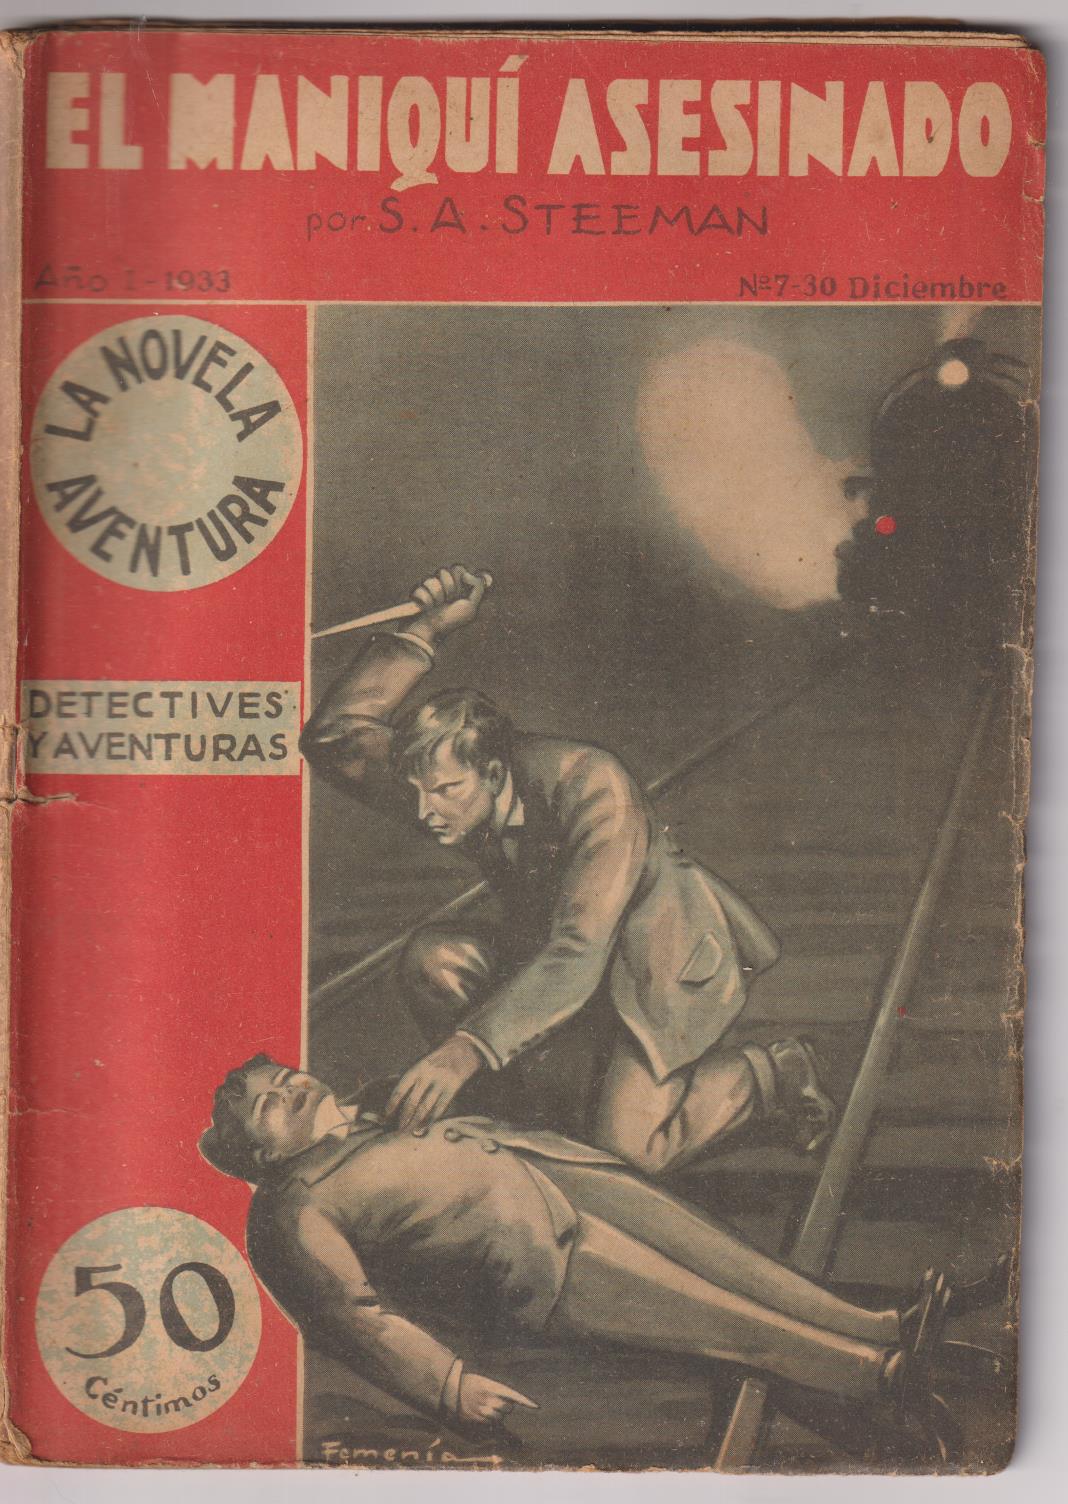 La Novela Aventura nº 7. El maniquí asesinado por S. A. Steeman. 1933